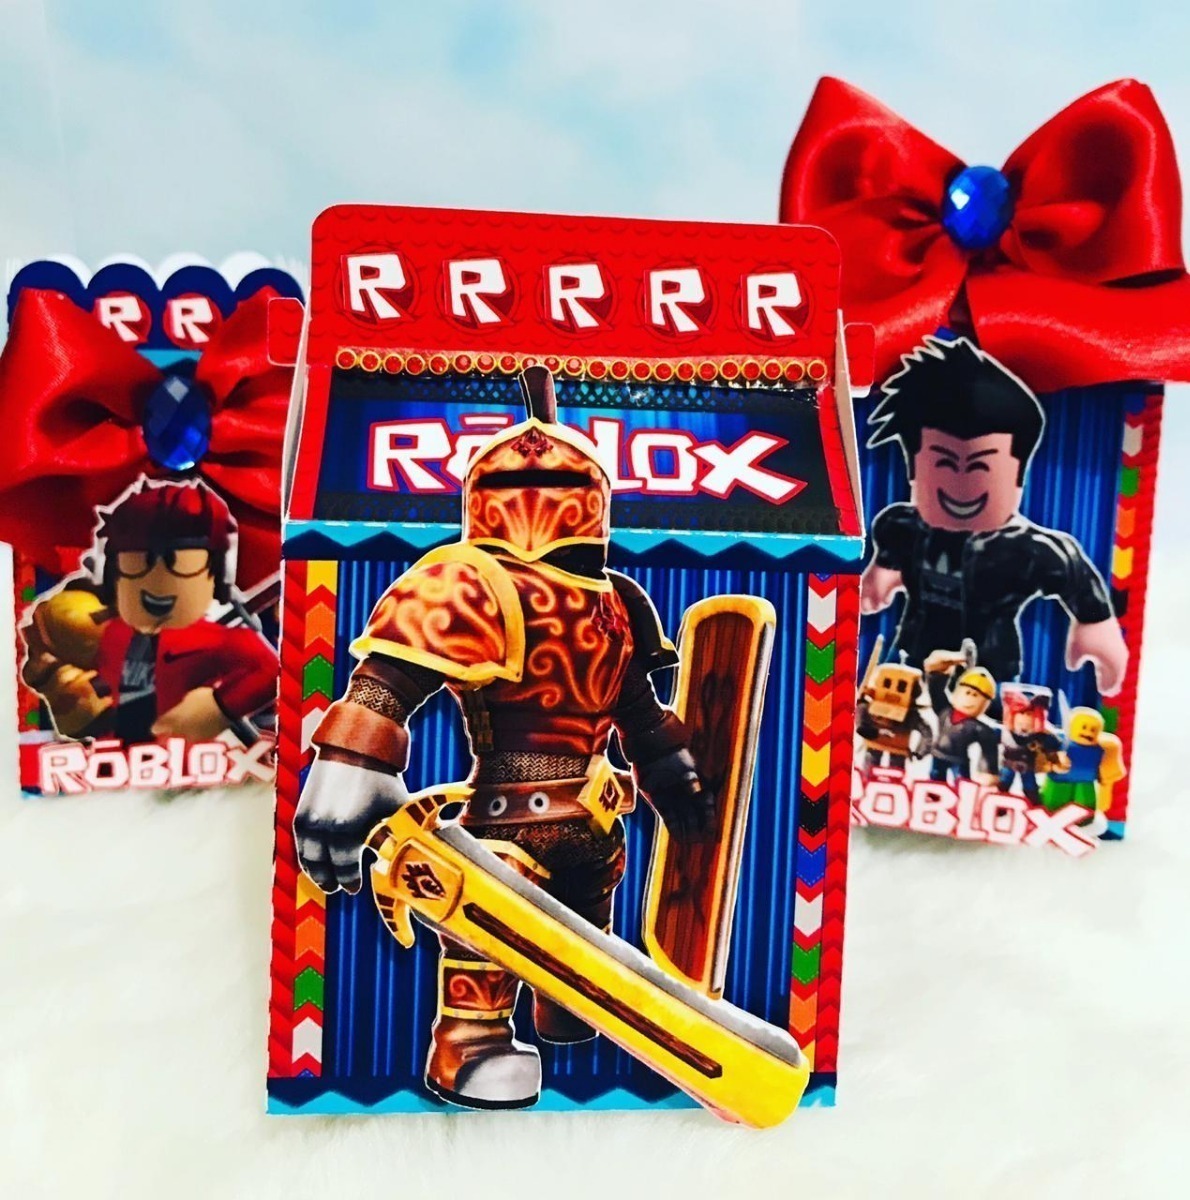 Kit Imprimible Roblox Candy Bar Disenos Cajas Corte Cameo 124 00 En Mercado Libre - candy bar de roblox